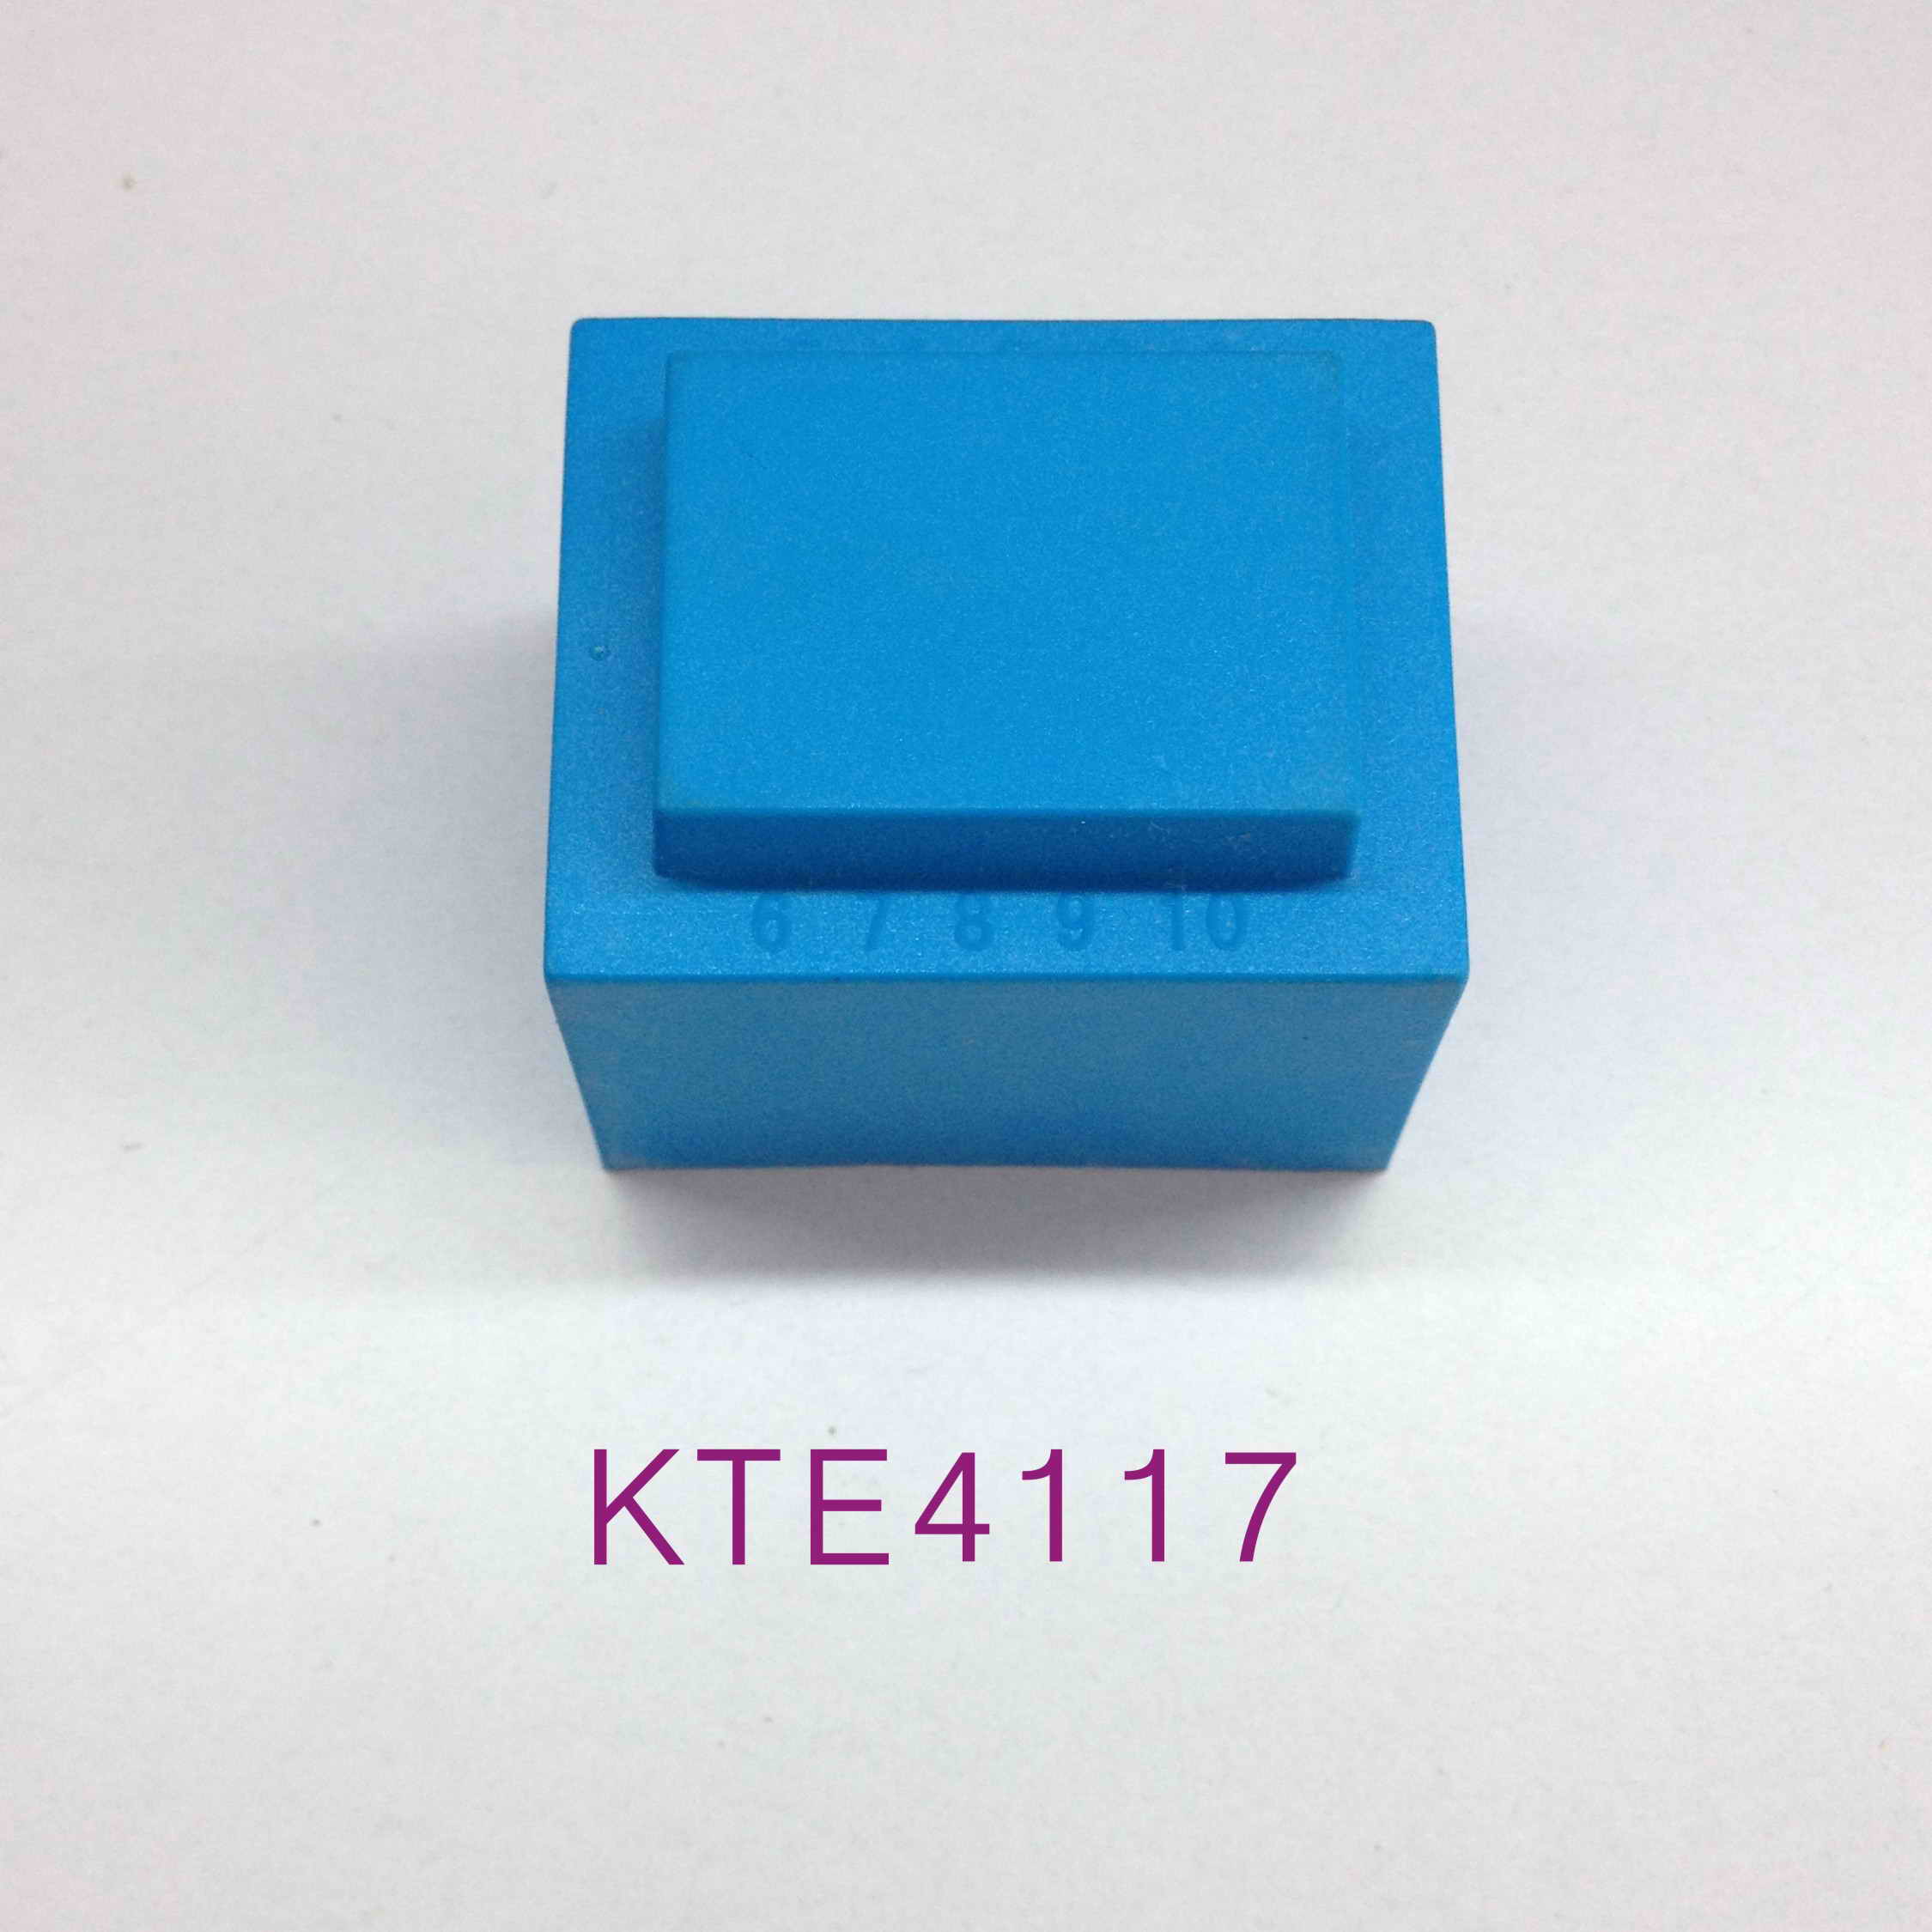 6VA灌封电源变压器 低频插针变压器 KTE4117 敬泰电子